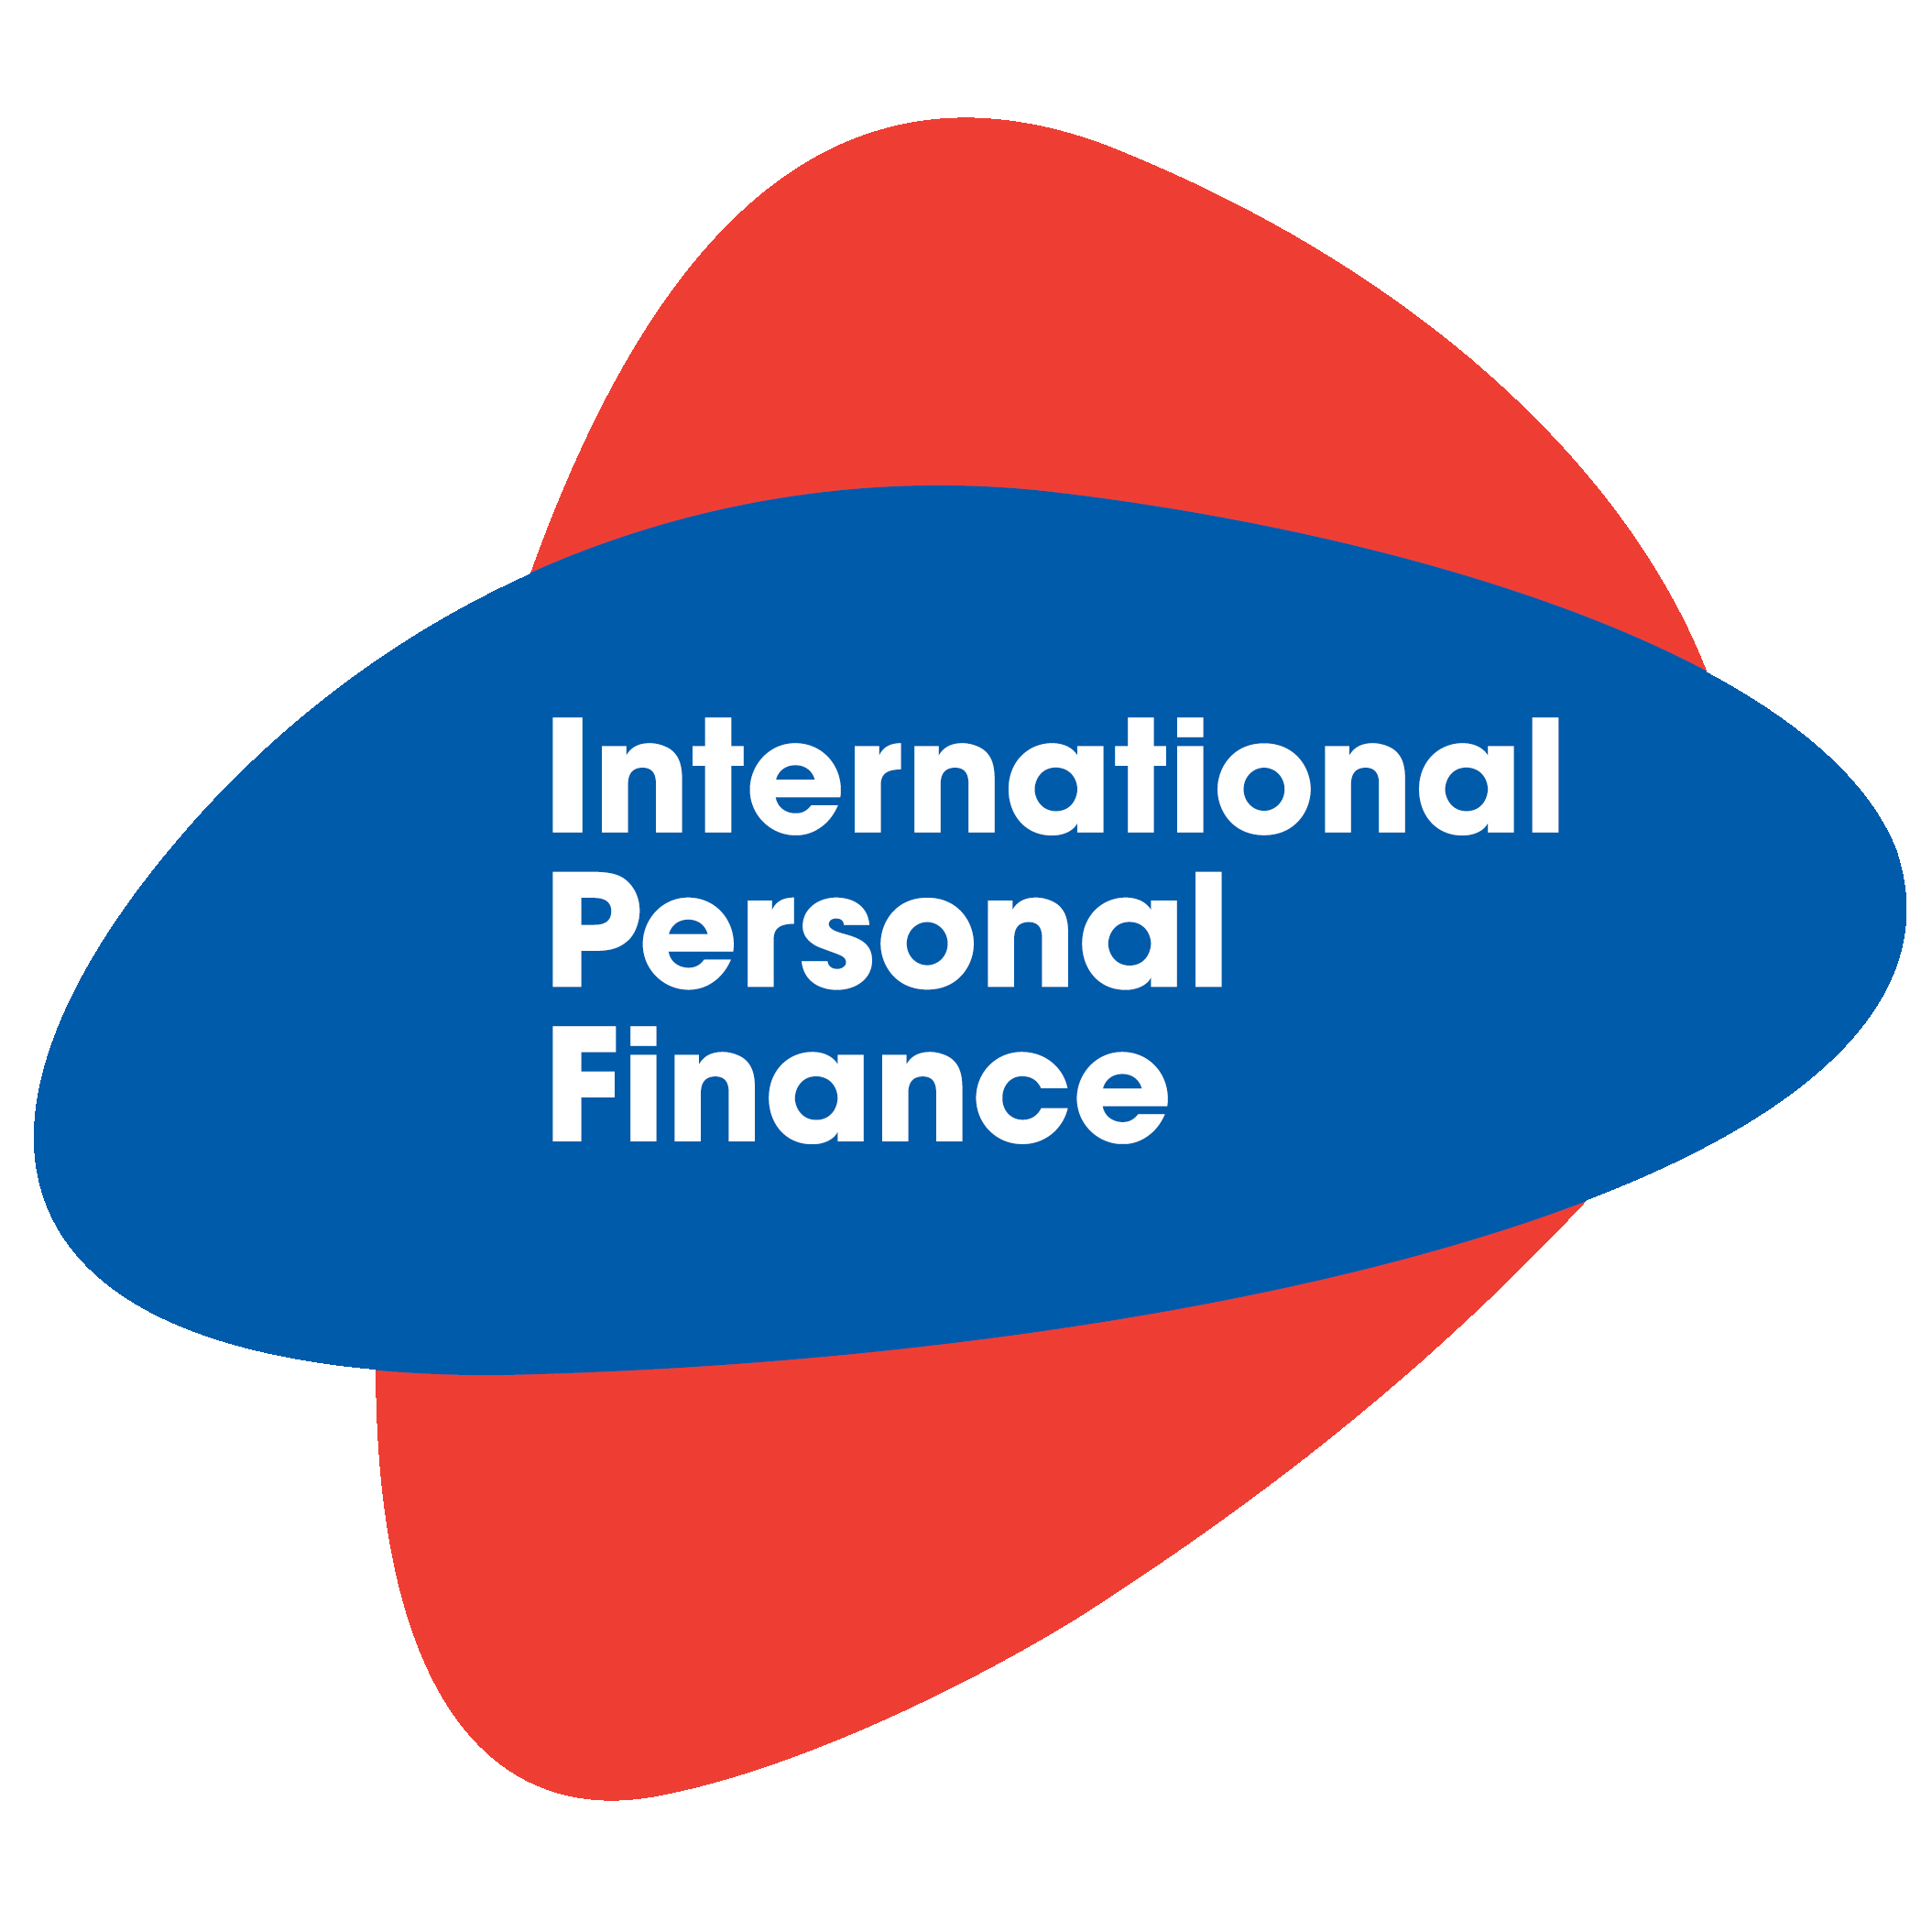 IPF Logo